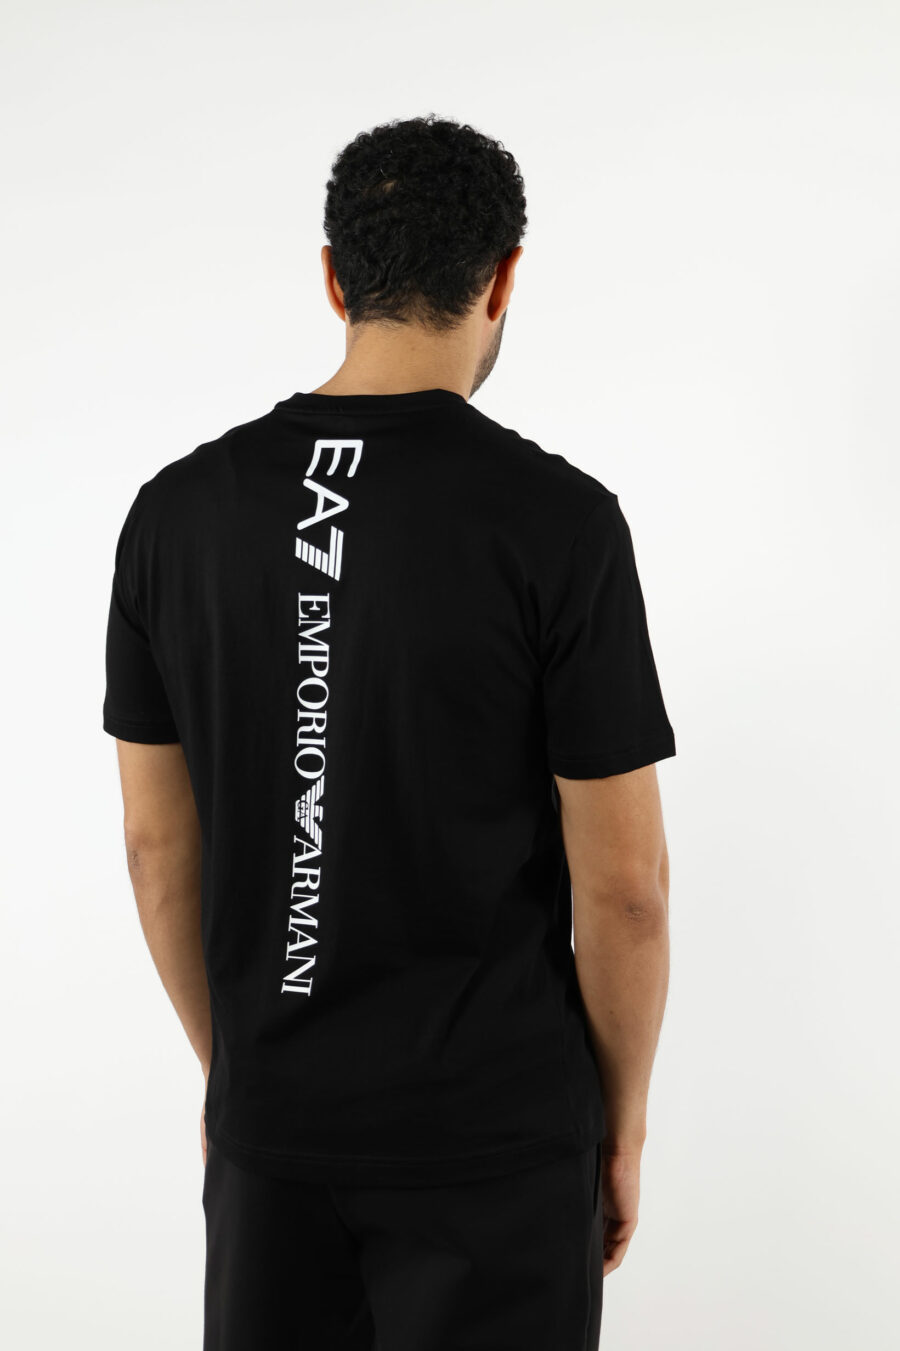 T-shirt noir avec maxilogo vertical "lux identity" dans le dos - 110887